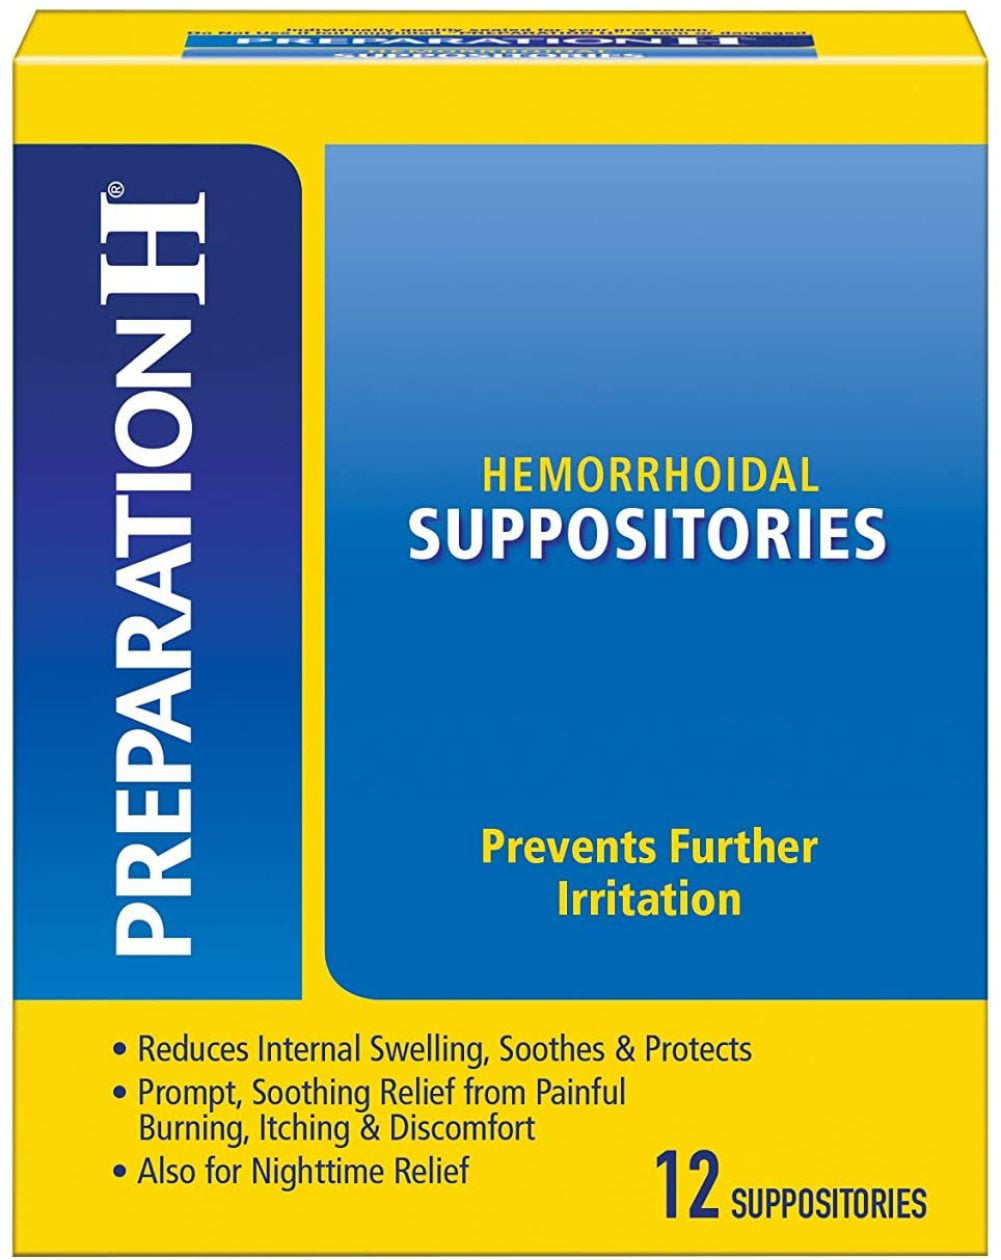 Preparation H Hemorrhoidal Suppositories, 24 suppositories